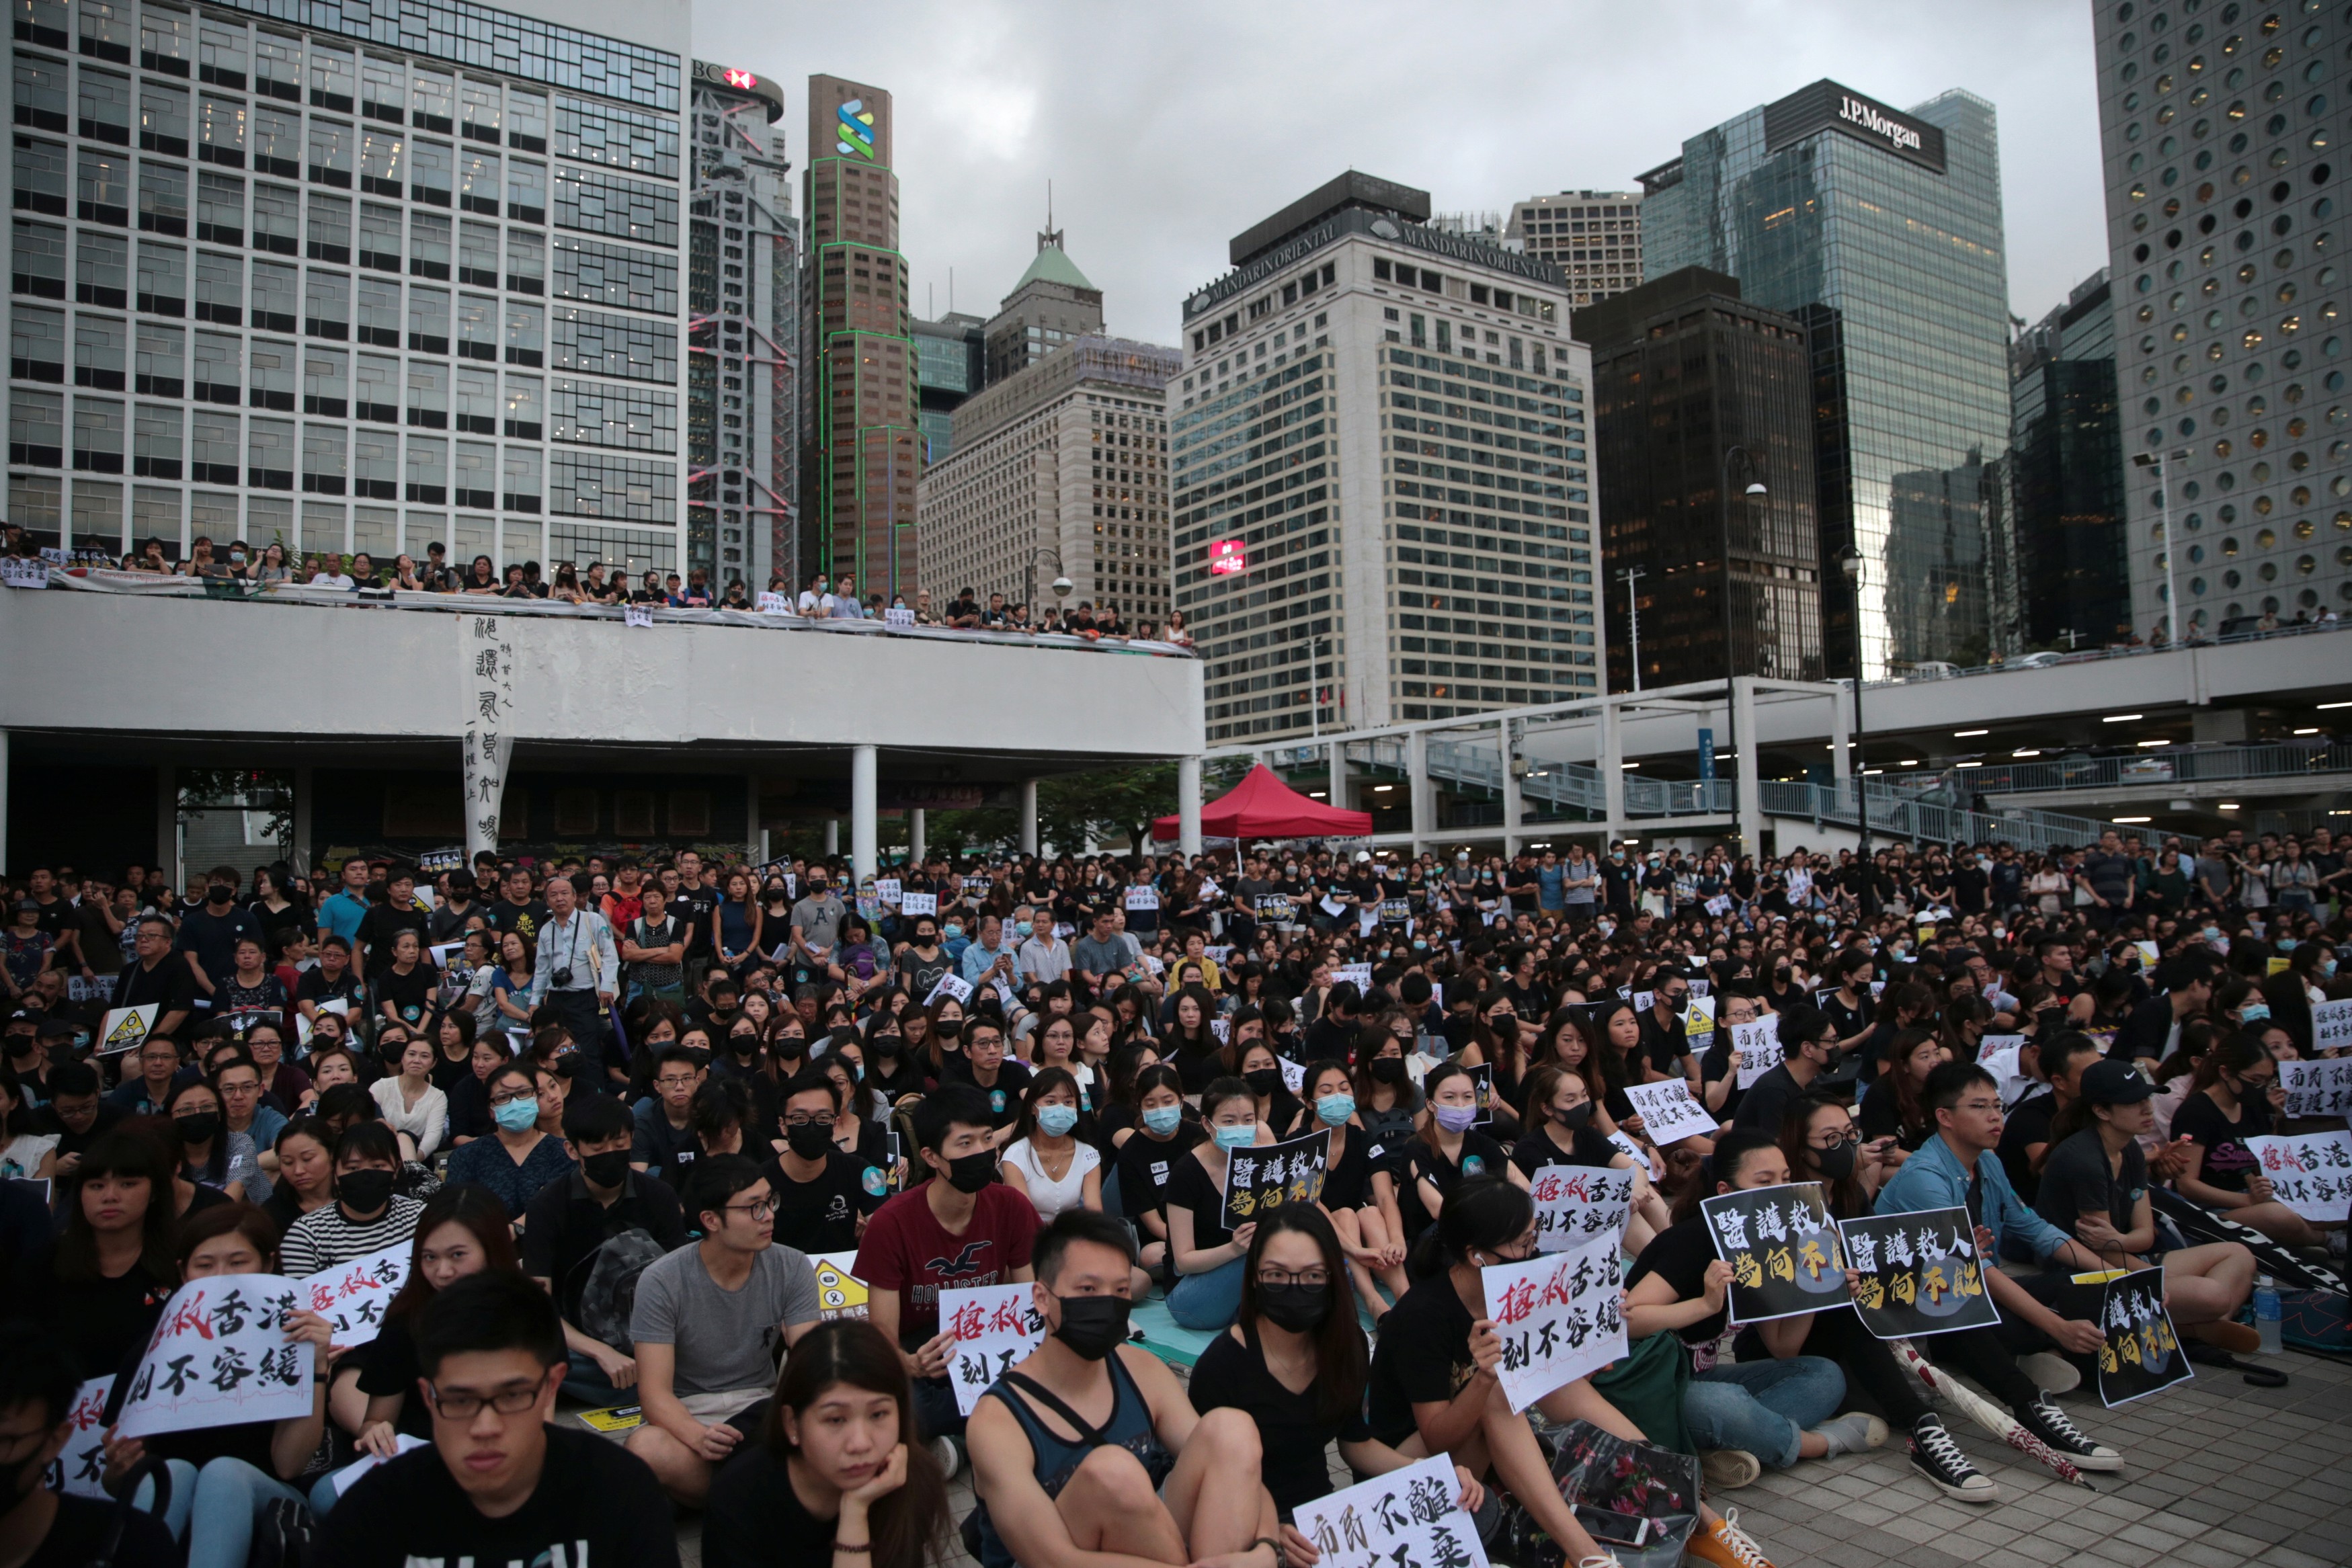 Δεν έχουν τέλος οι αντικυβερνητικές διαδηλώσεις στο Χονγκ Κονγκ